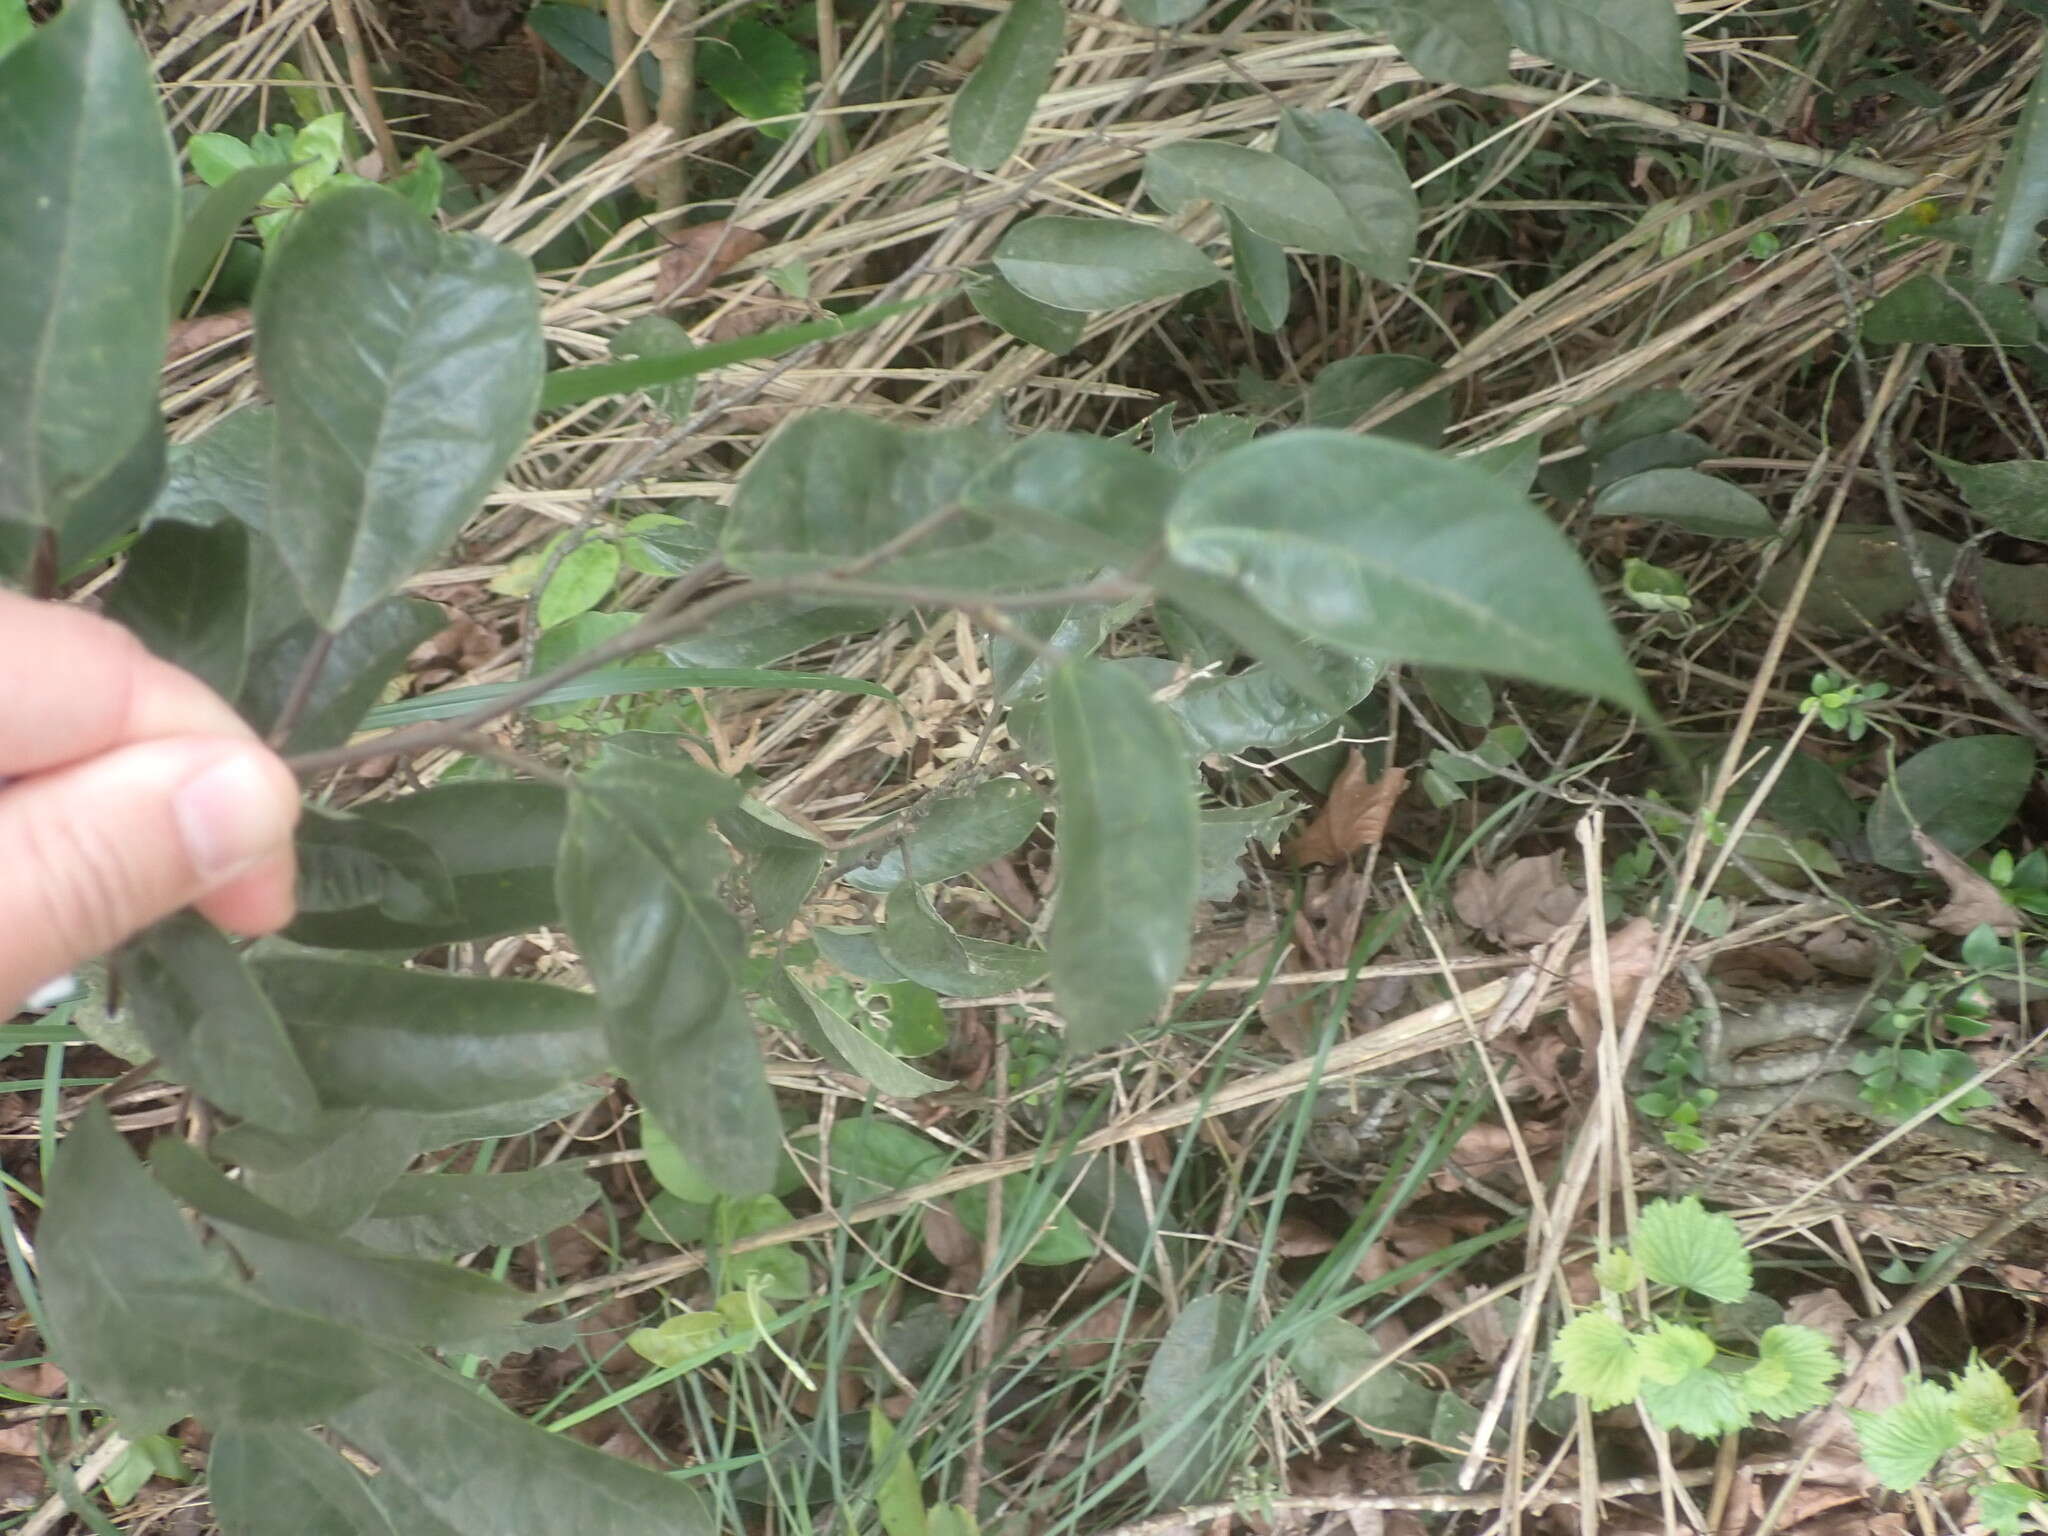 Image of Ficus sarmentosa Buch. ex J. E. Smith